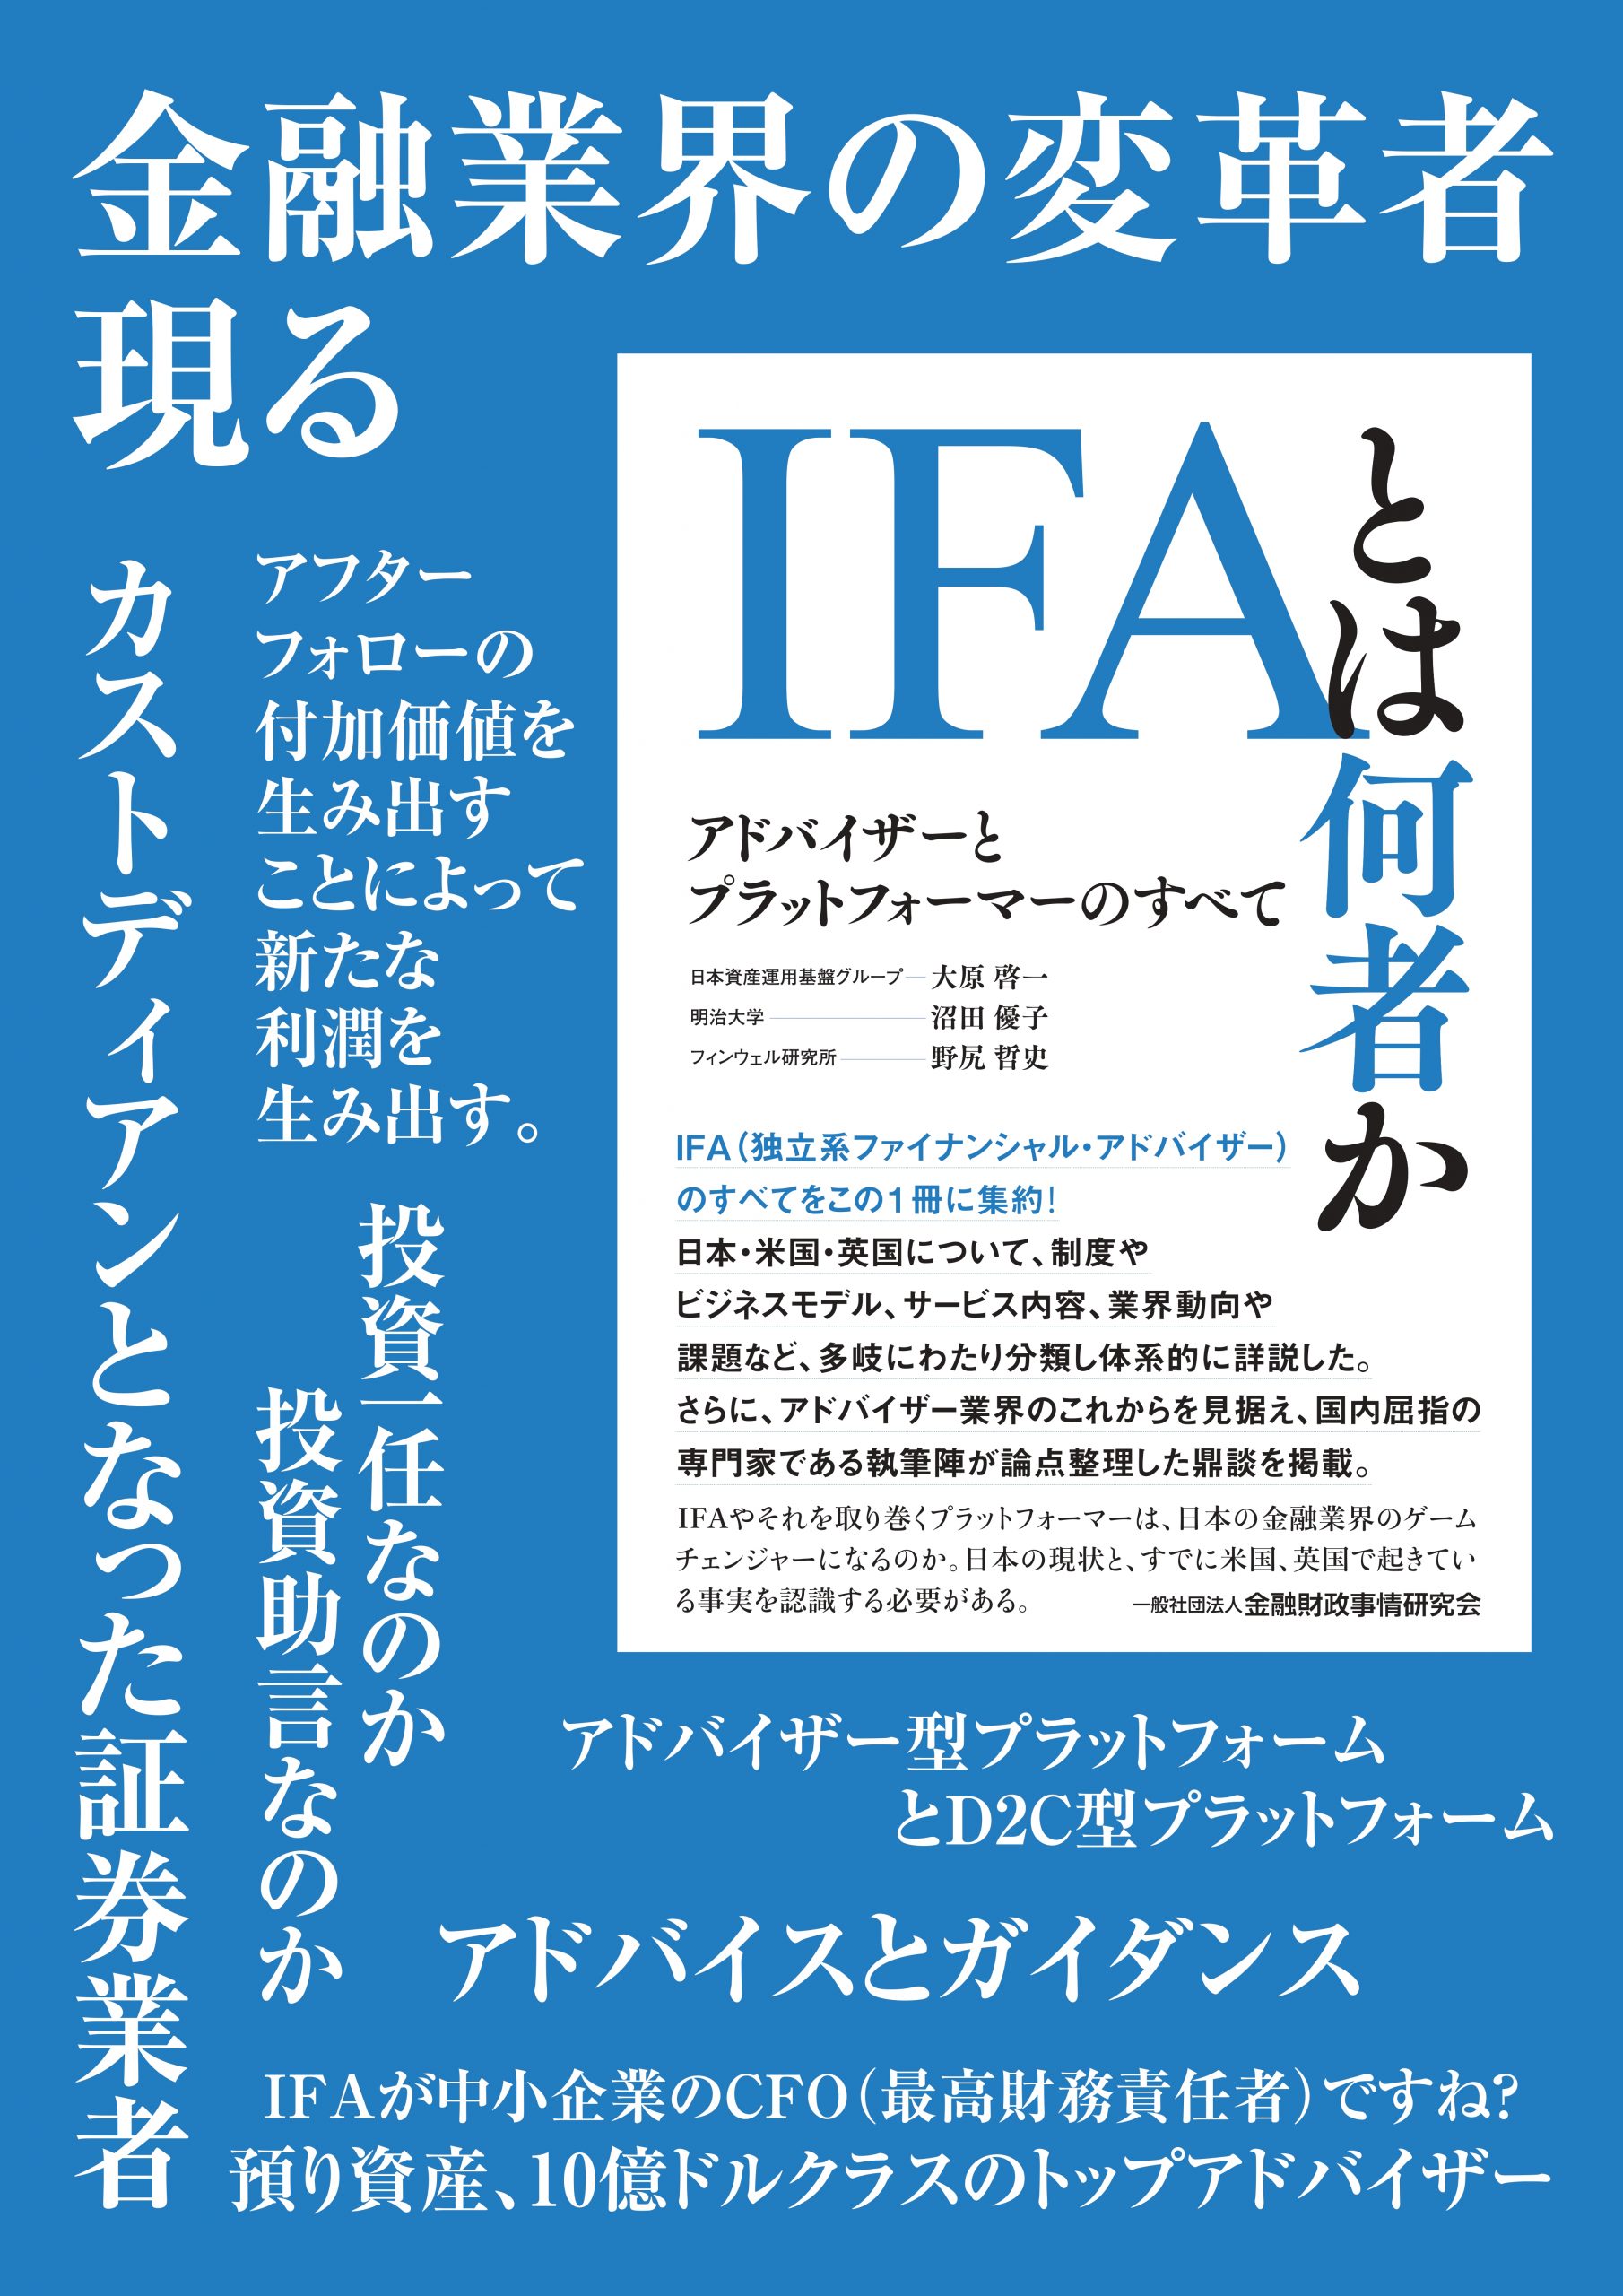 日本のifaビジネス 第2回 英国ifaはもうかっているのか Kinzai Financial Planの旧連載 合同会社フィンウェル研究所